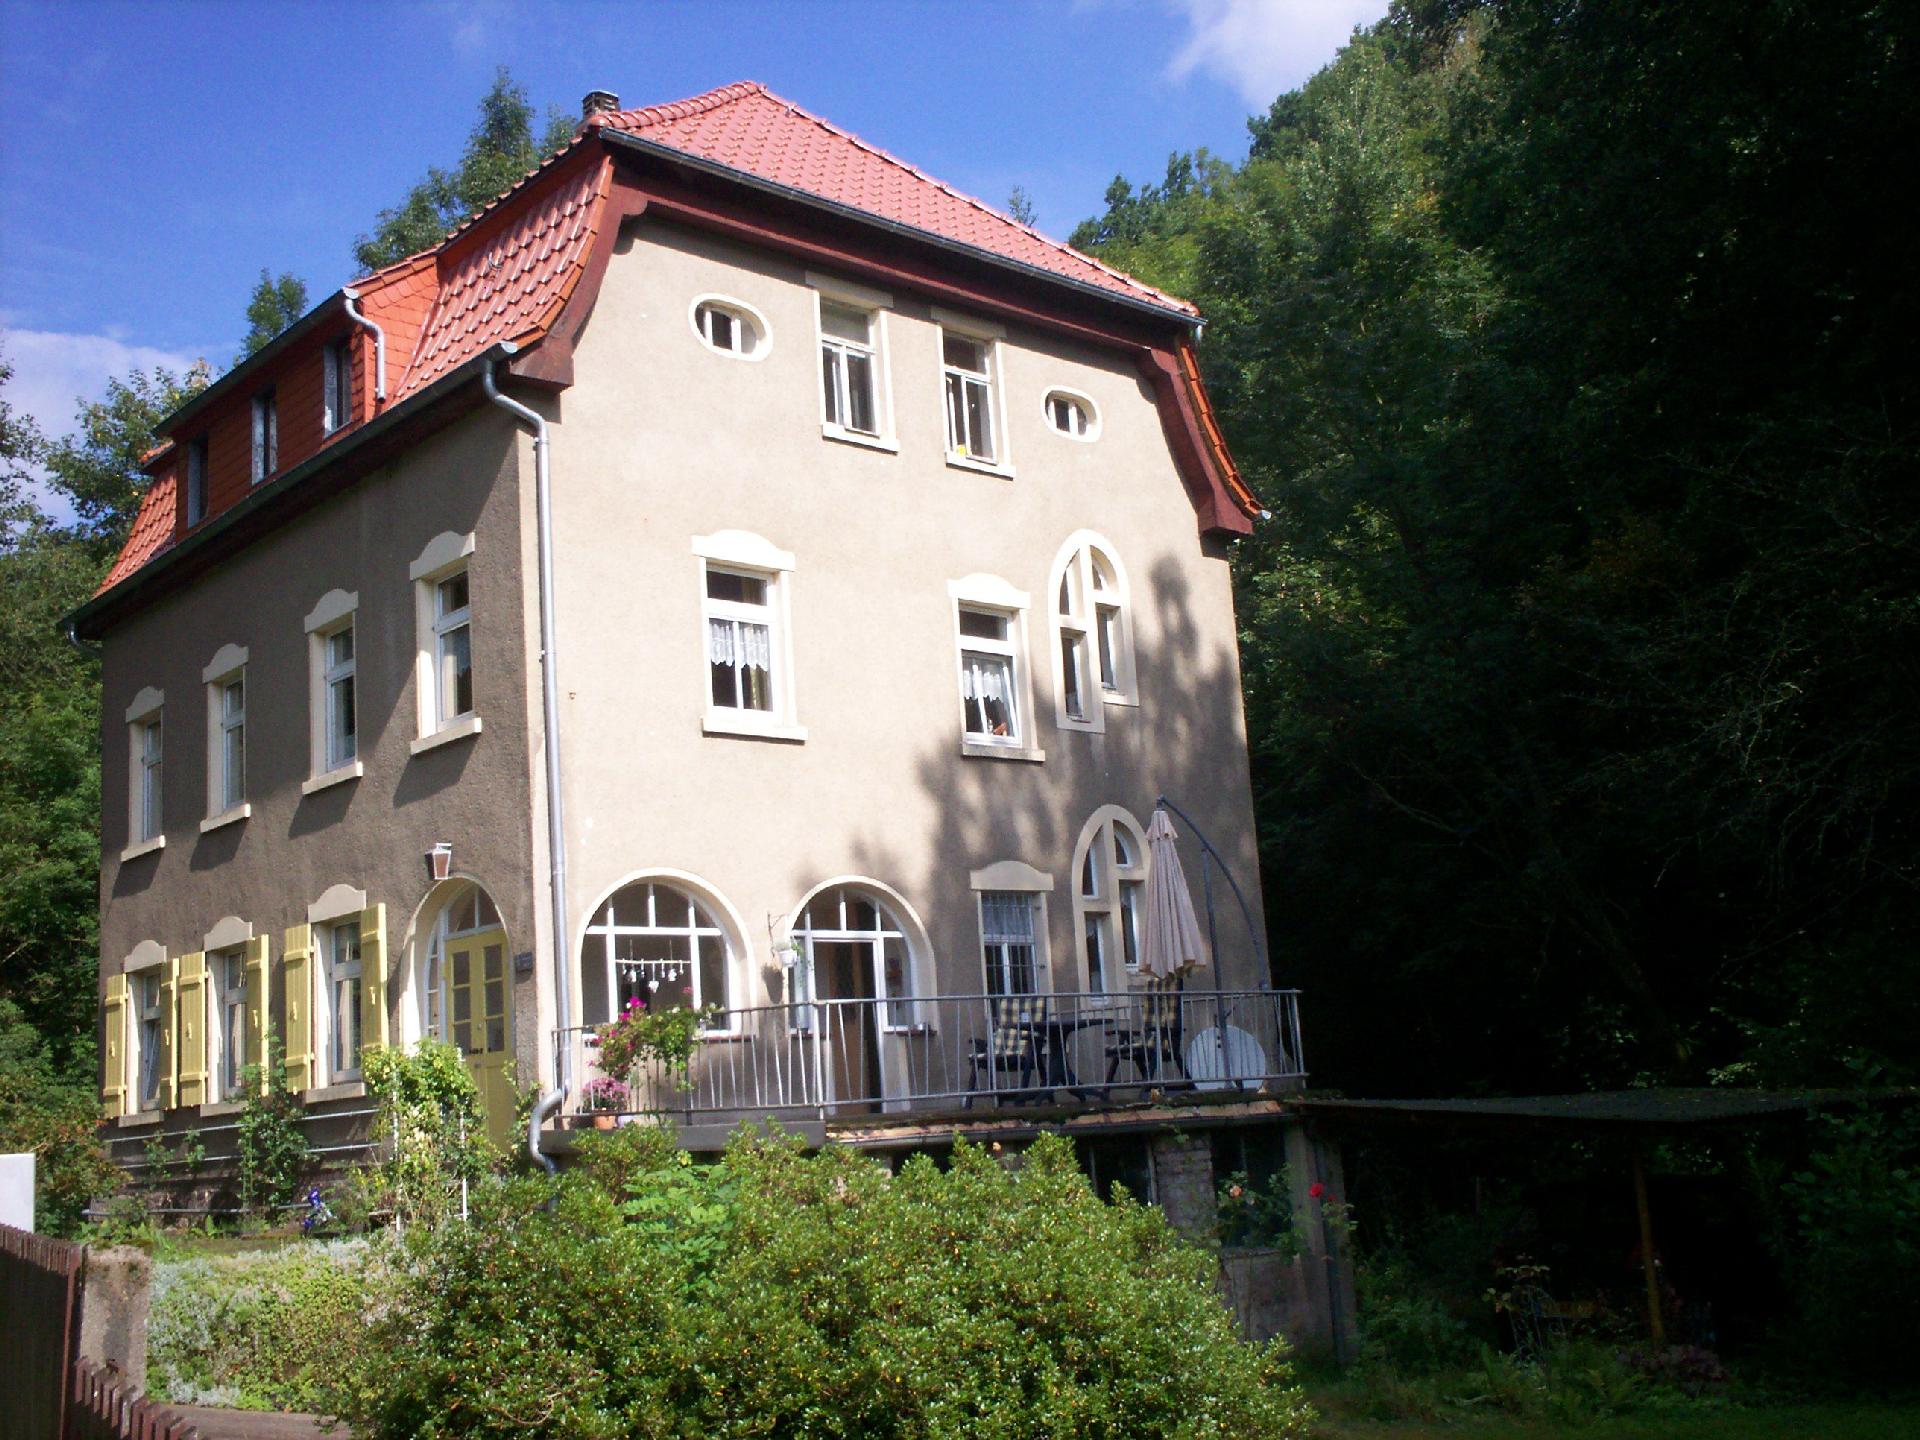 Appartement in Waldheim mit Großem Garten Ferienwohnung in Deutschland